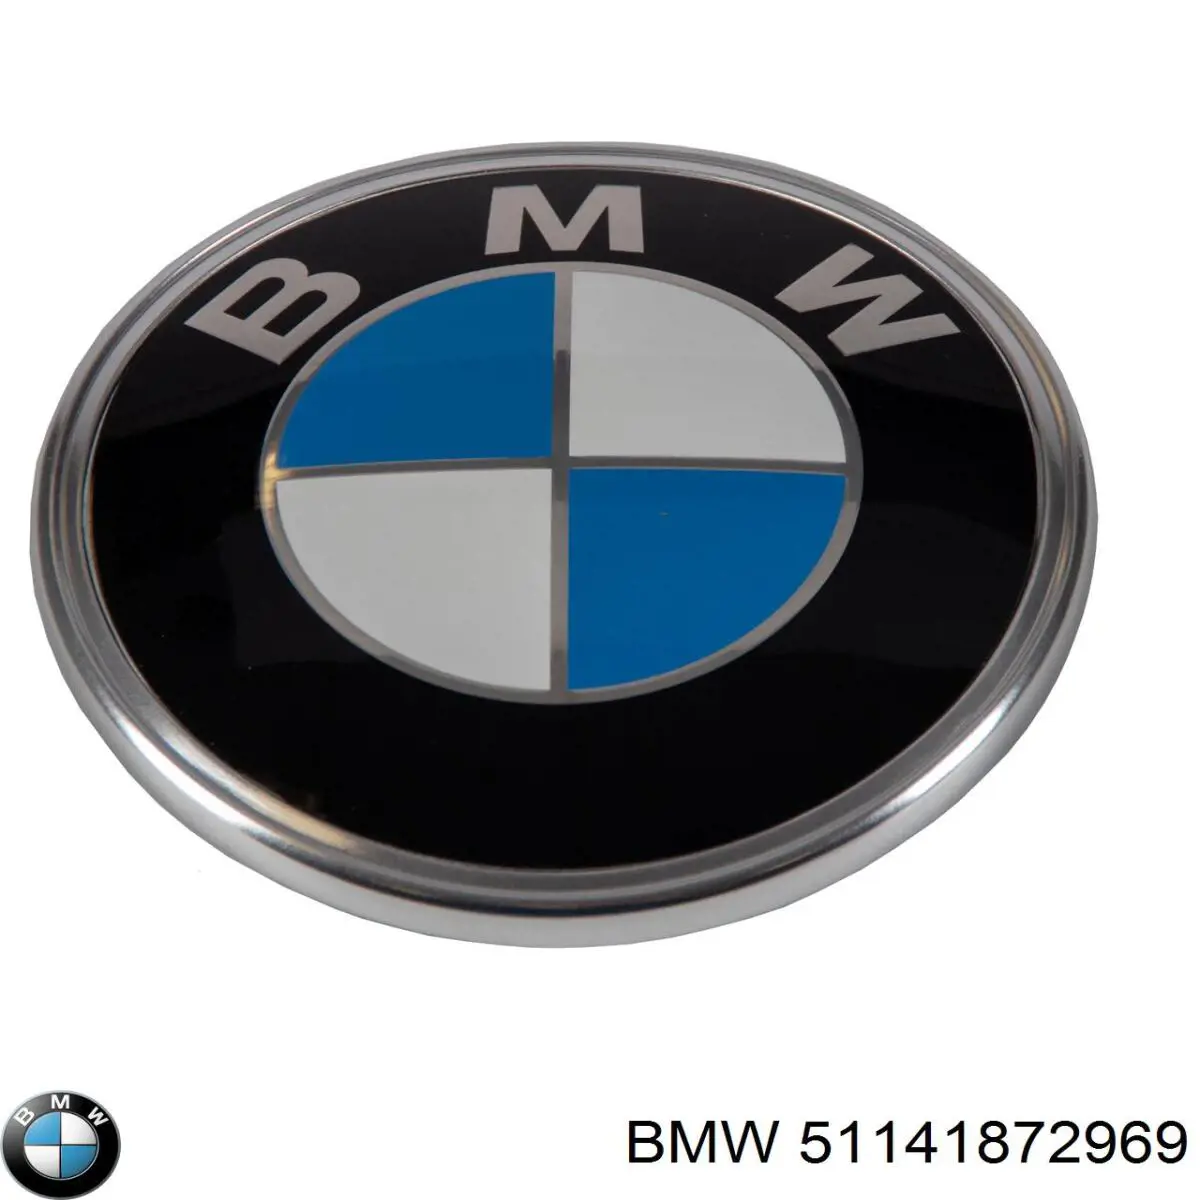 51141872969 BMW emblema de tapa de maletero